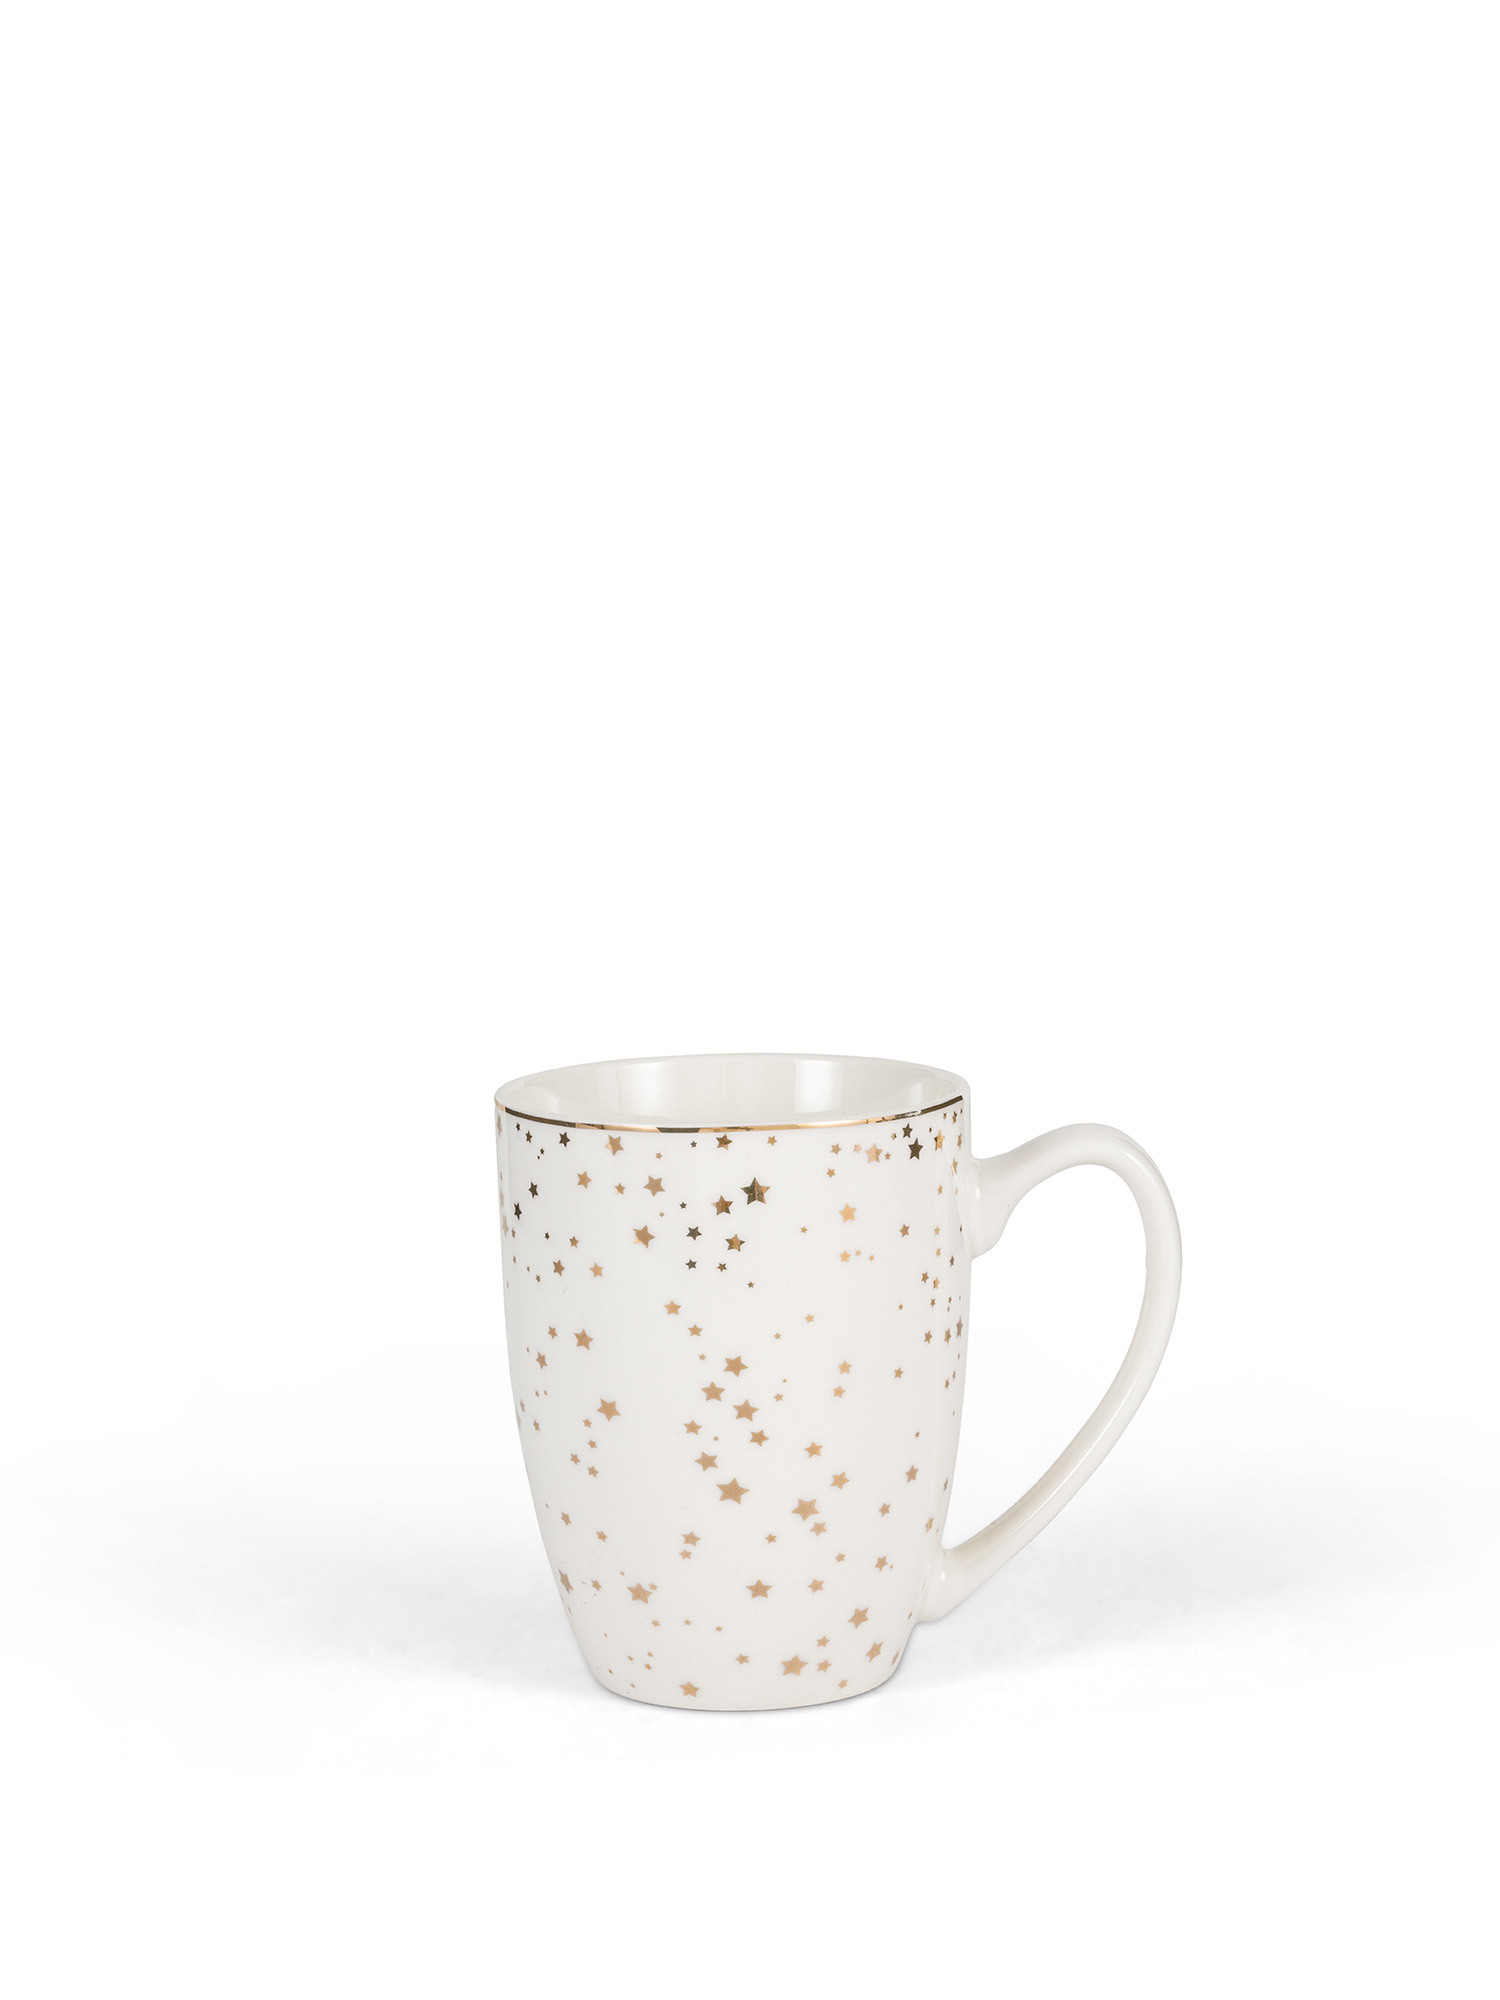 New bone china mug with stars, Gold, large image number 0